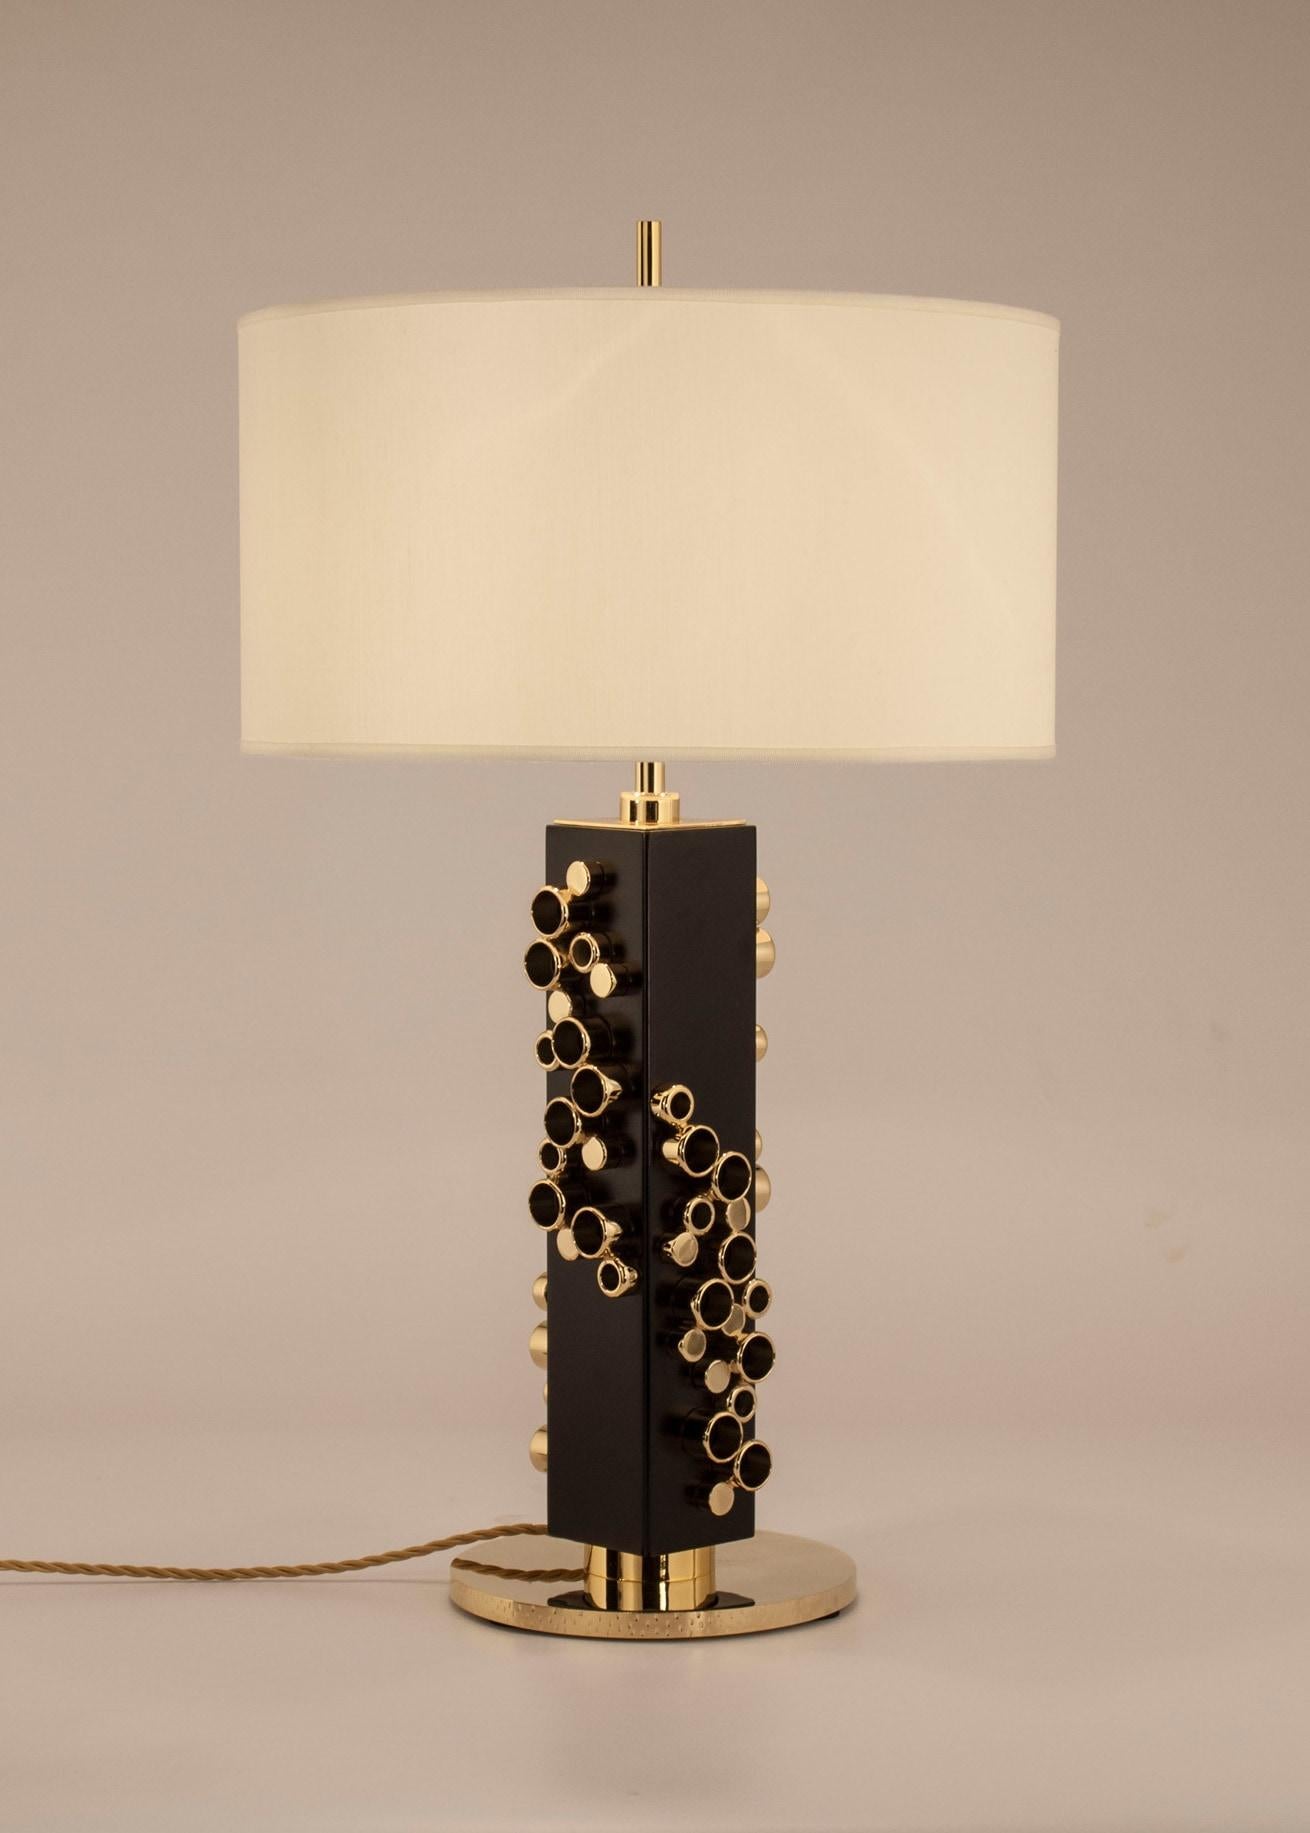 Lampe avec base en laiton moulé décorée, cadre en bois laqué noir décoré de précieux détails cylindriques en laiton avec bain d'or. Abat-jour circulaire en shantung ivoire.